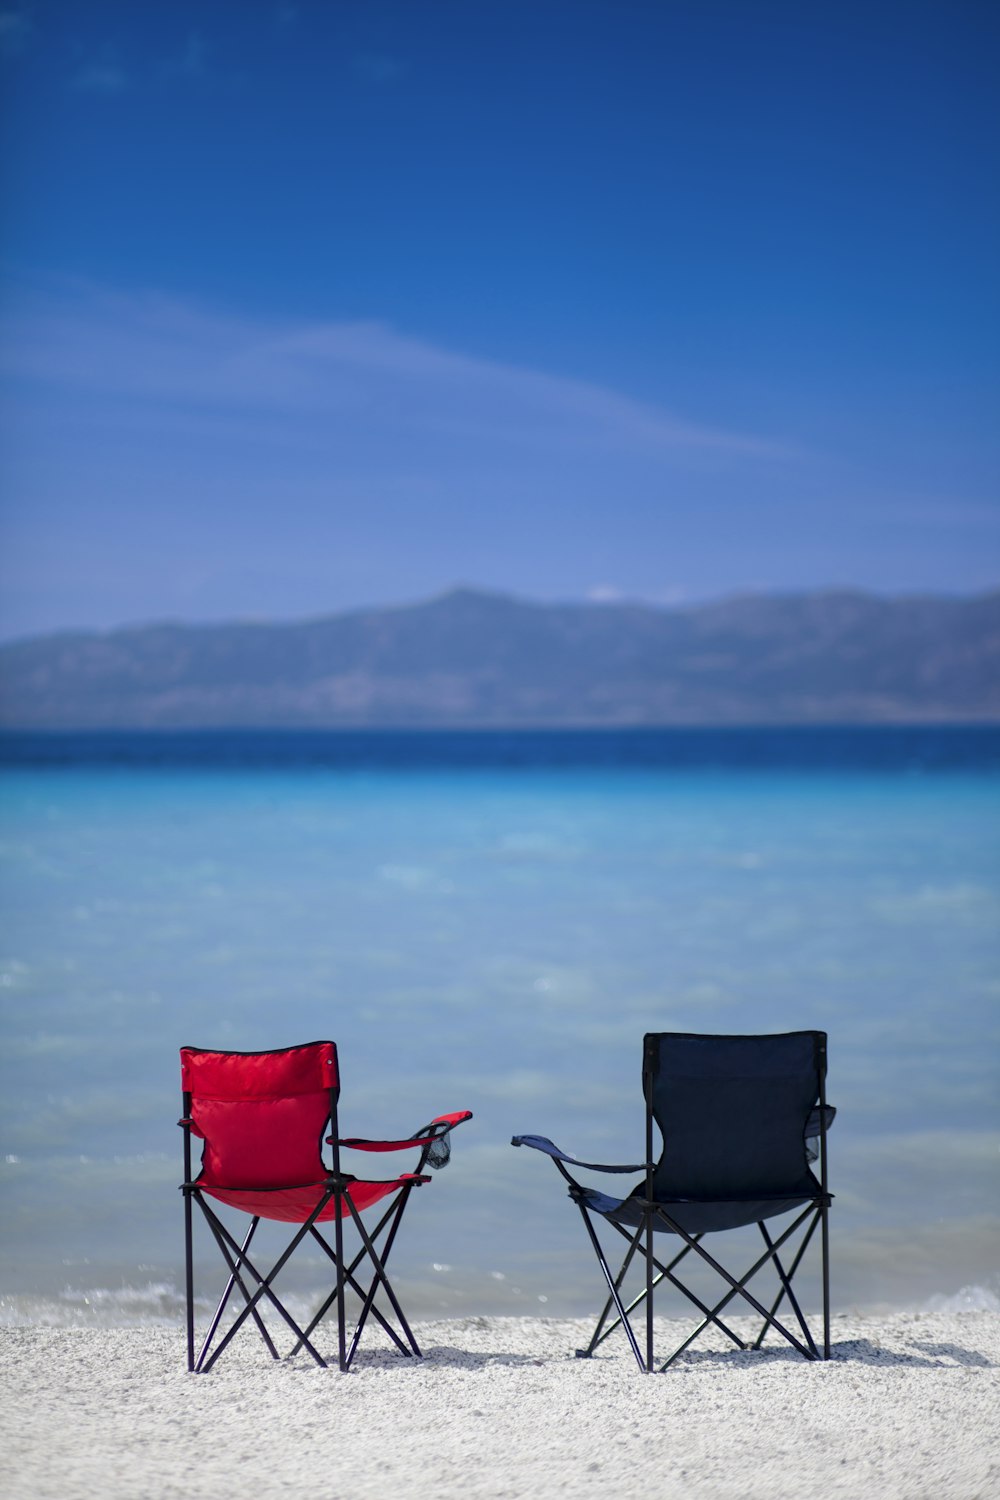 sedia da campeggio rossa e nera sulla sabbia grigia vicino allo specchio d'acqua durante il giorno